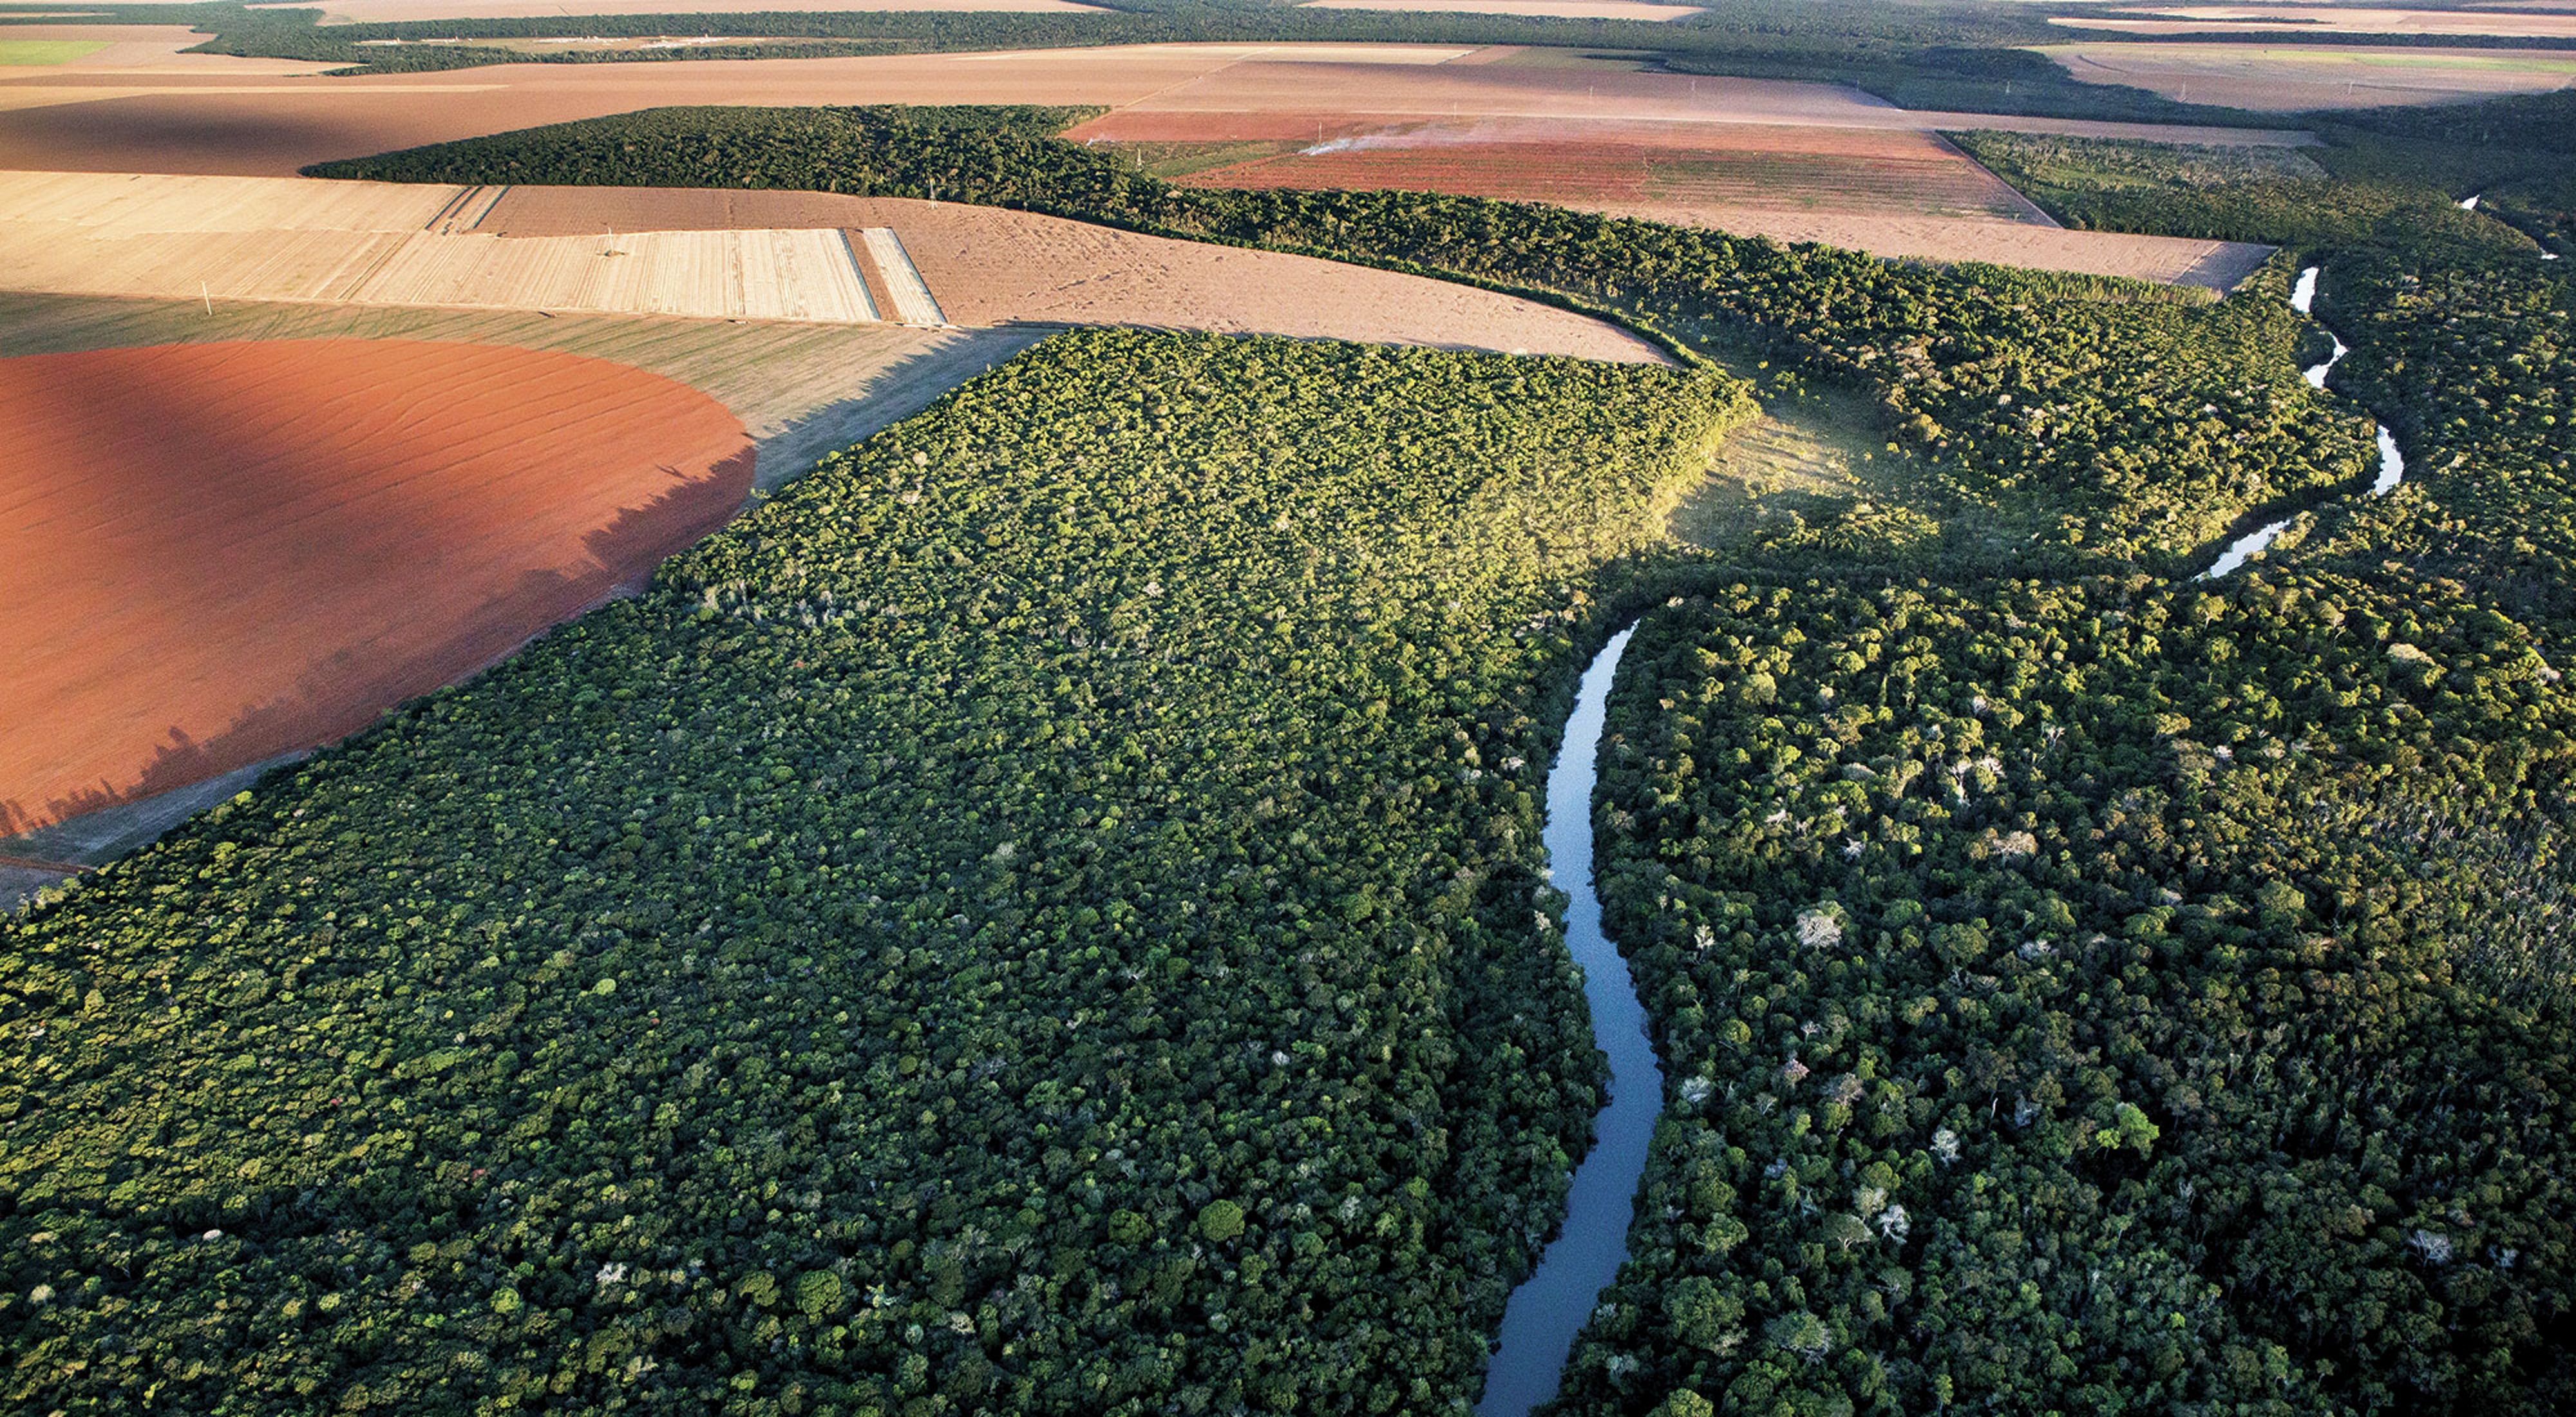 Rodeado de campos de soja, el bosque nativo de Mato Grosso sobrevive gracias a herramientas como Agroideal que están ayudando a llevar la producción de alimentos en Brasil 